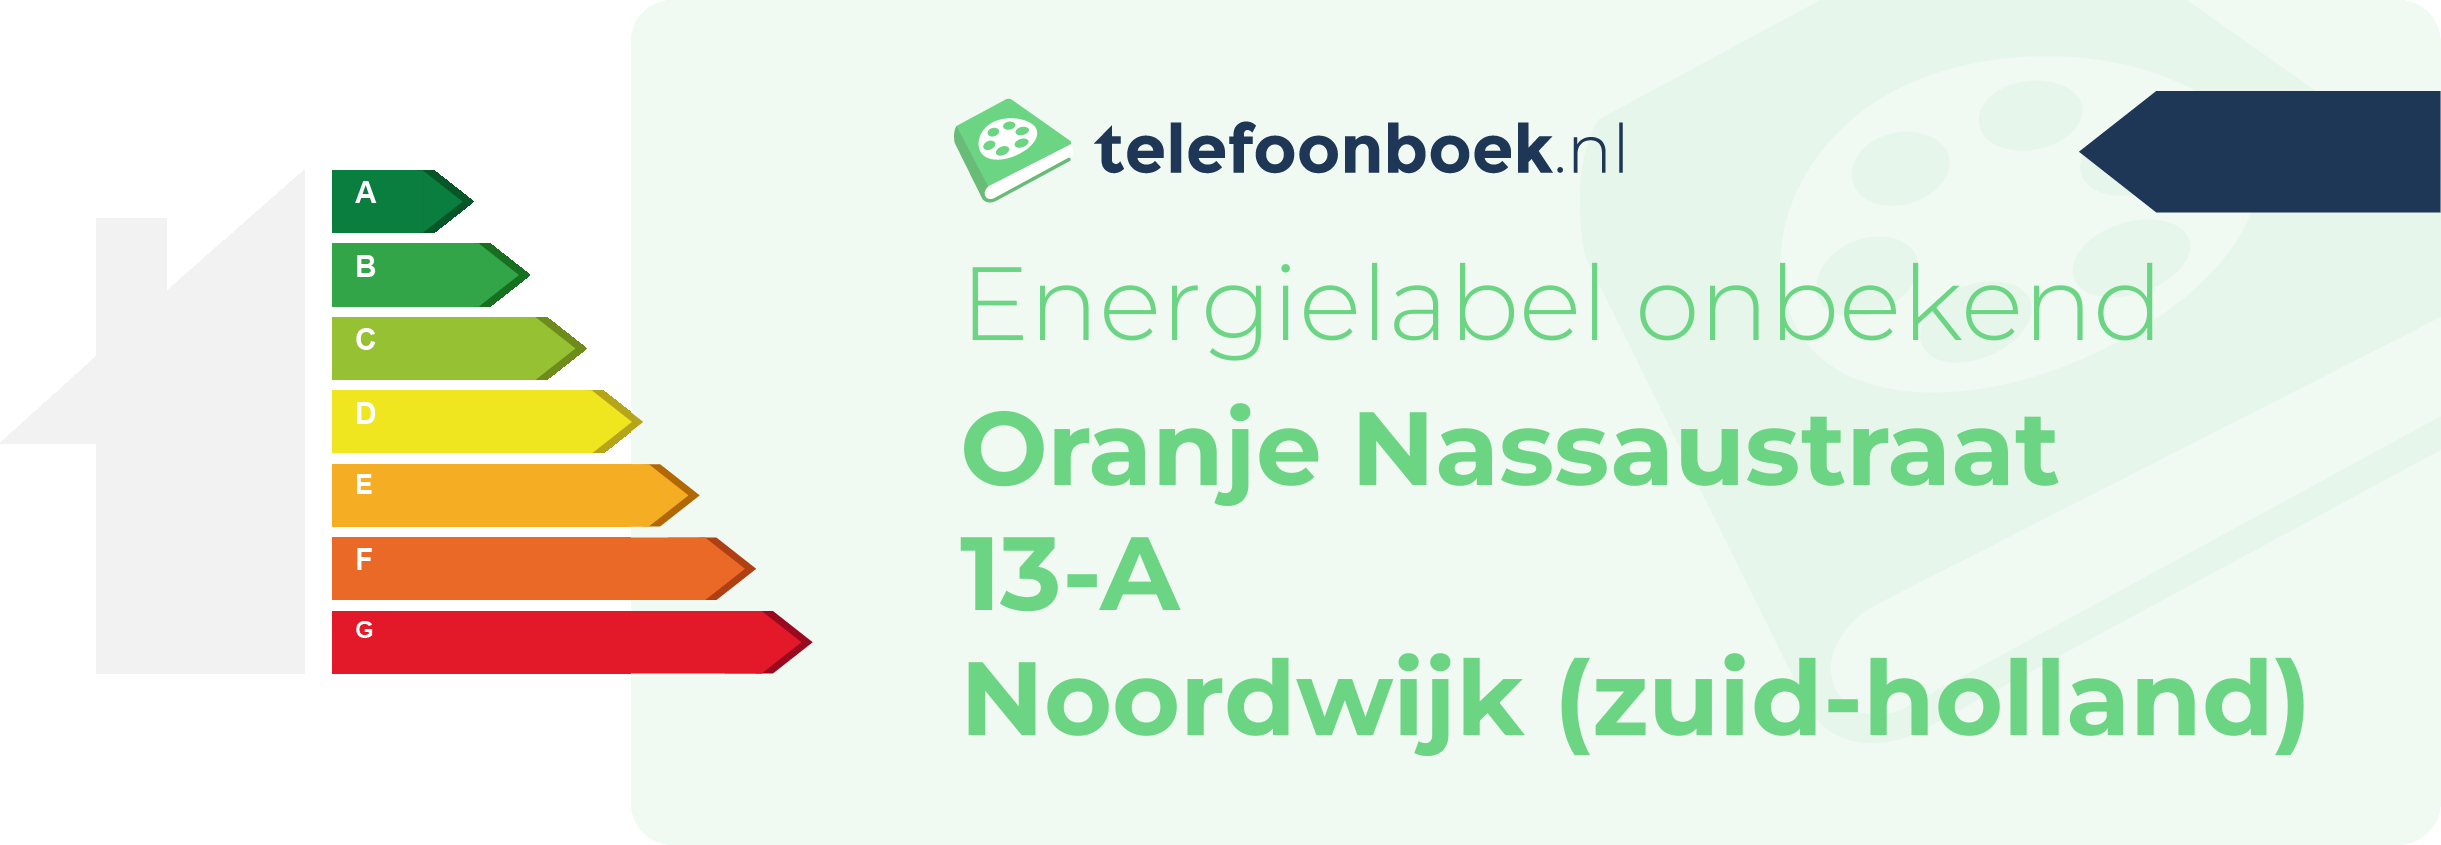 Energielabel Oranje Nassaustraat 13-A Noordwijk (Zuid-Holland)